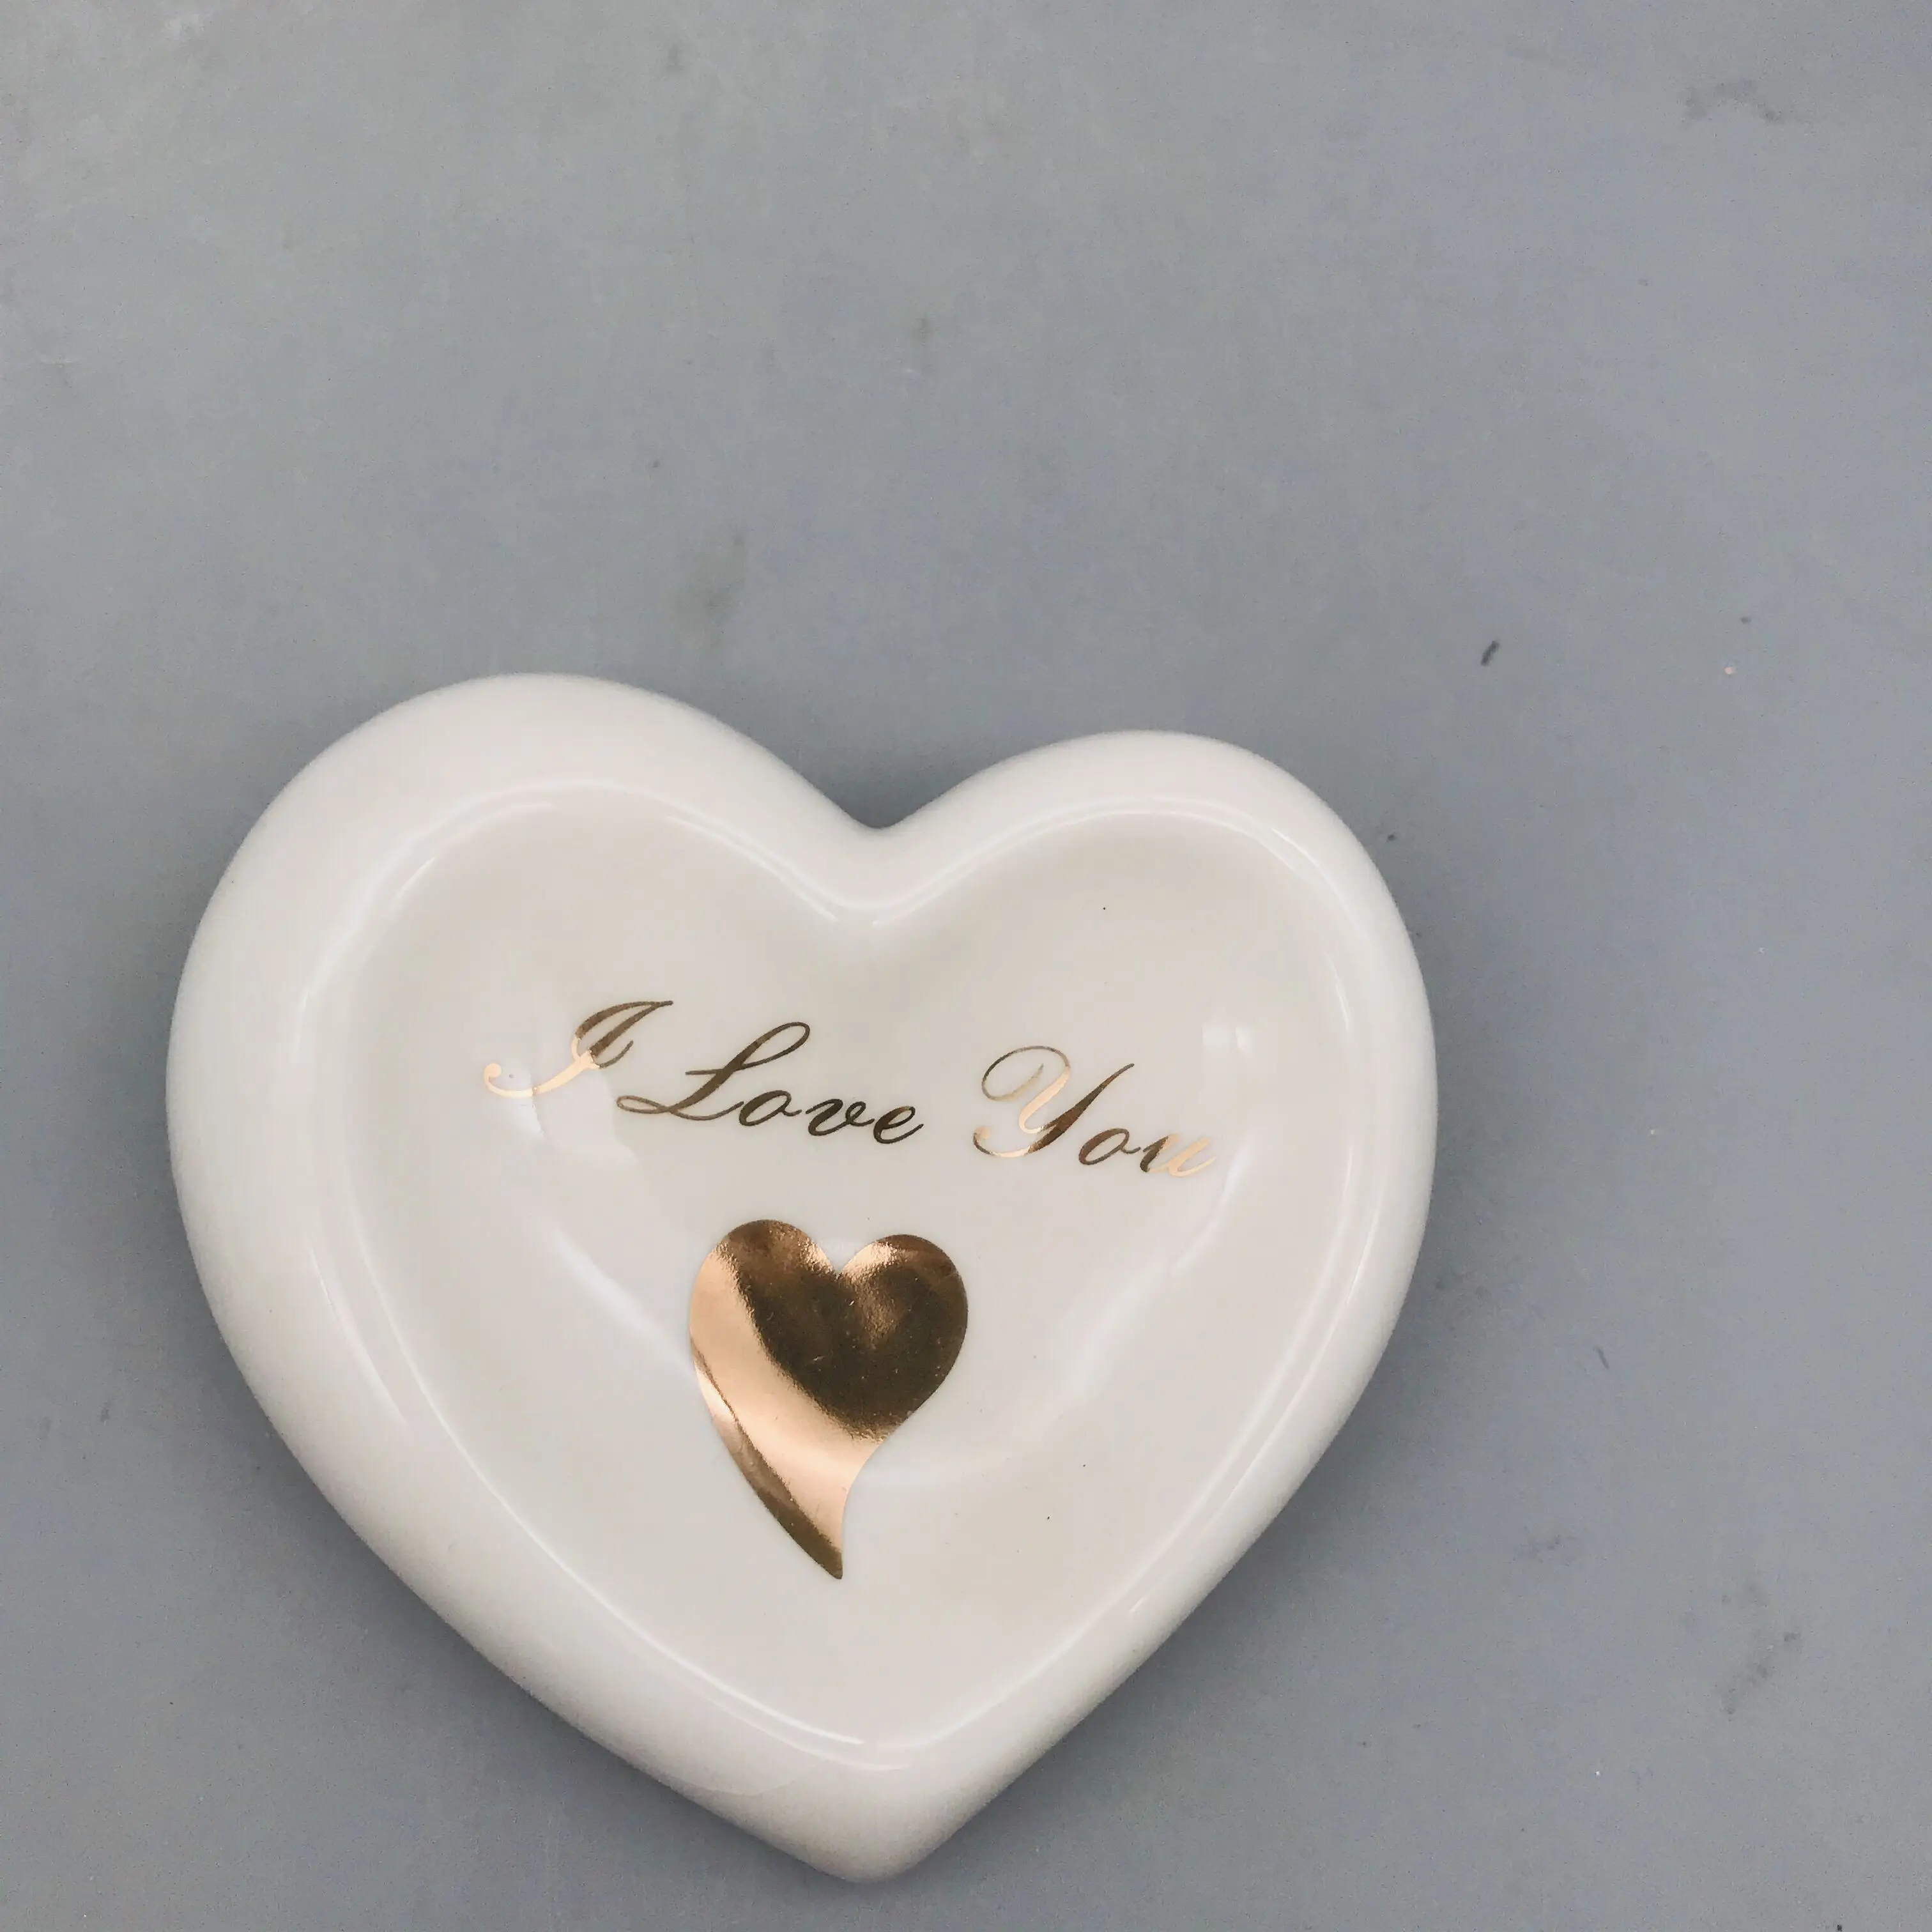 Cheap wholesale white porcelain decal heart shape decoration